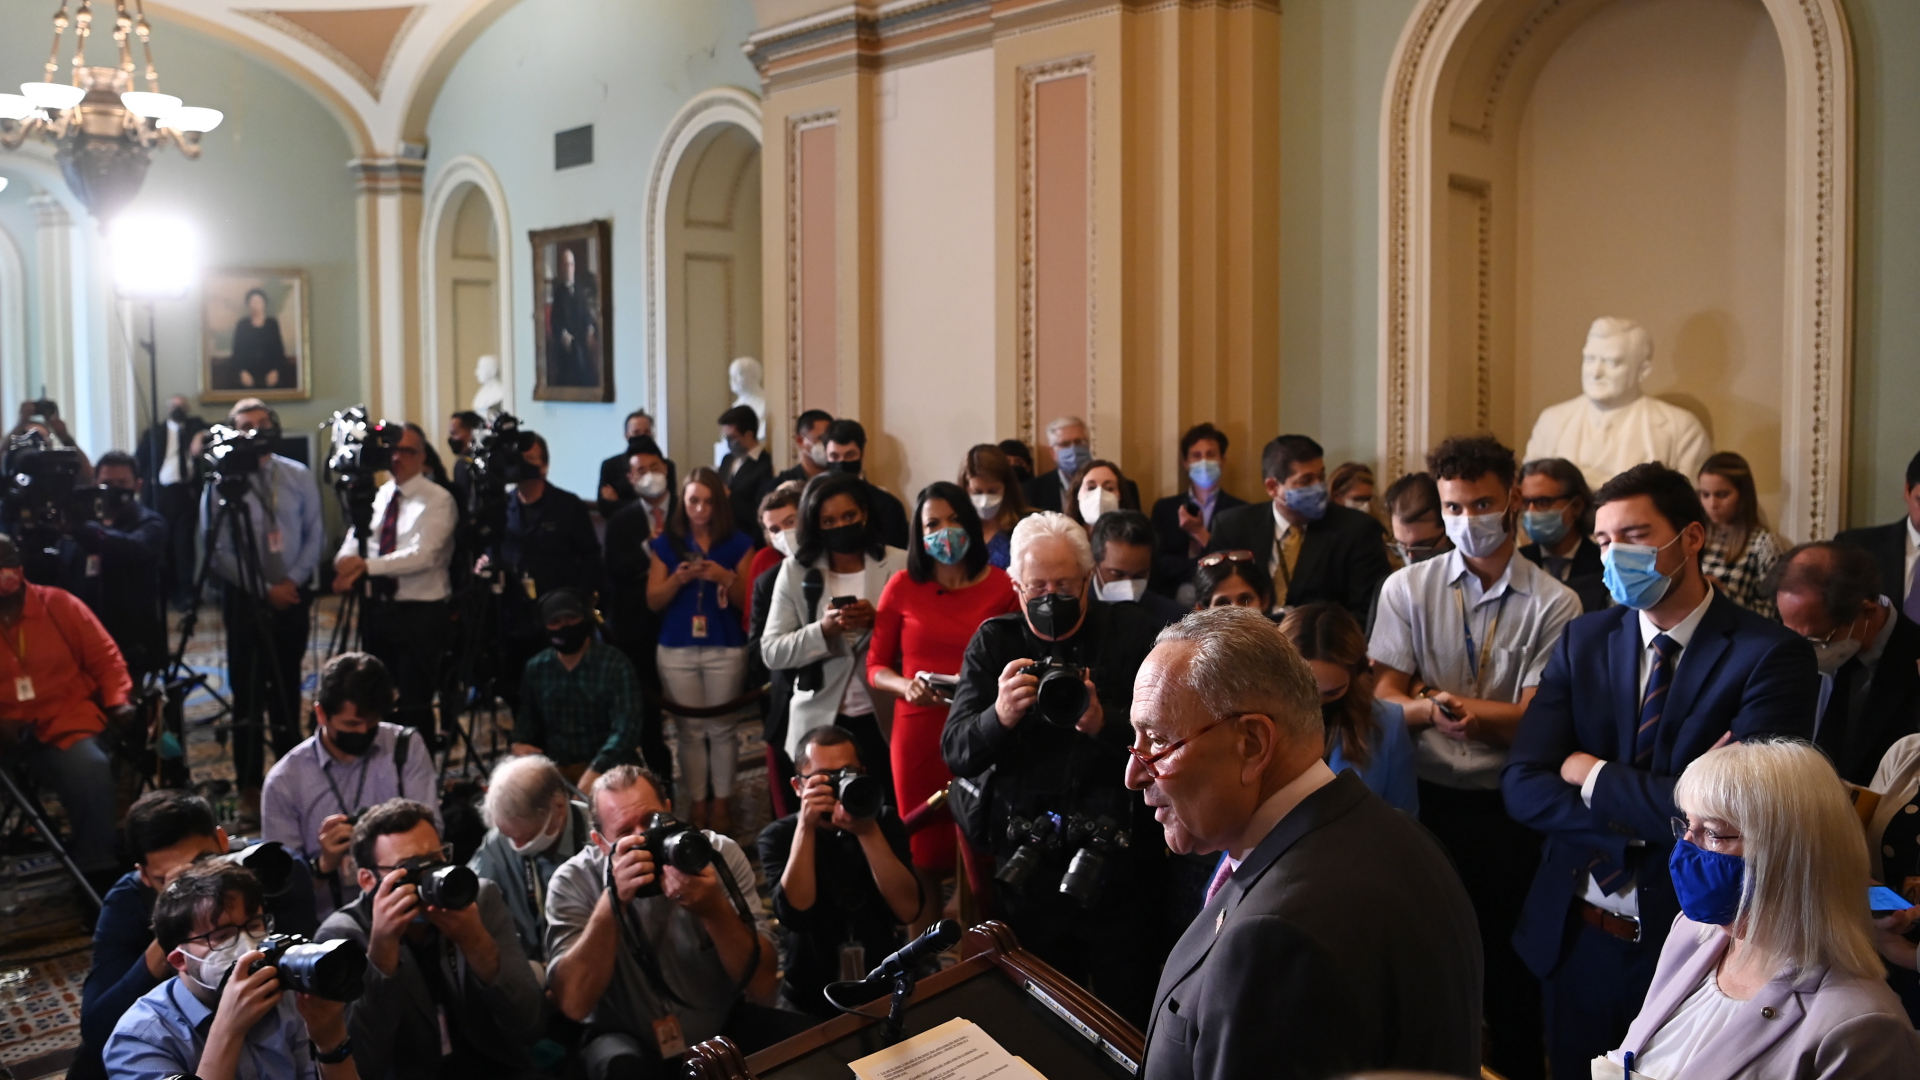 Senats-Mehrheitsführer Chuck Schumer spricht im Capitol vor Reportern. | EPA